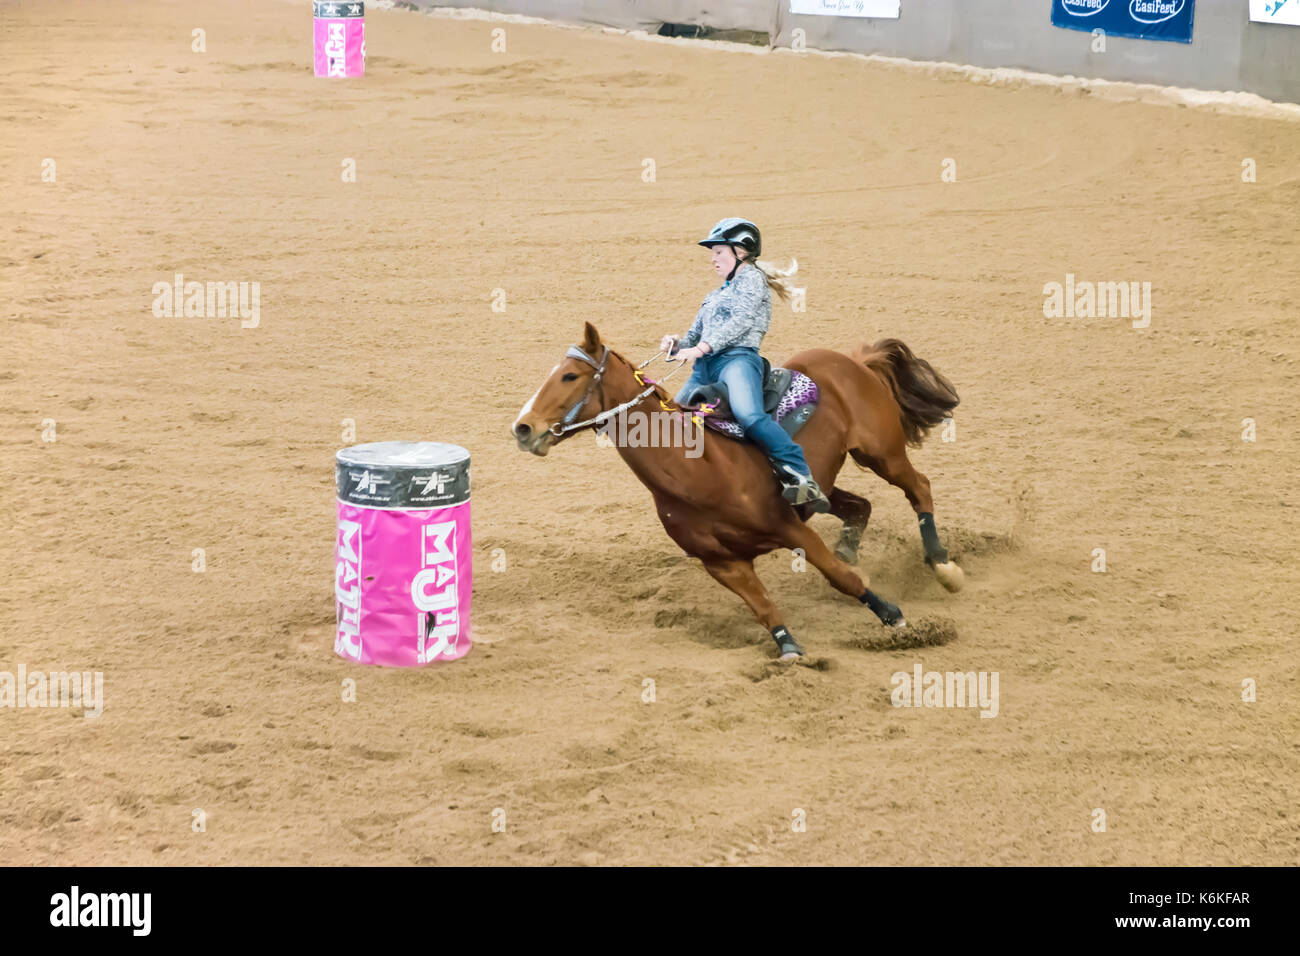 Reitsport, meine Damen National Finals Barrel Race am australischen Pferden und Vieh Events Center (AELEC) Indoor Arena, Tamworth NSW Australien, Se Stockfoto